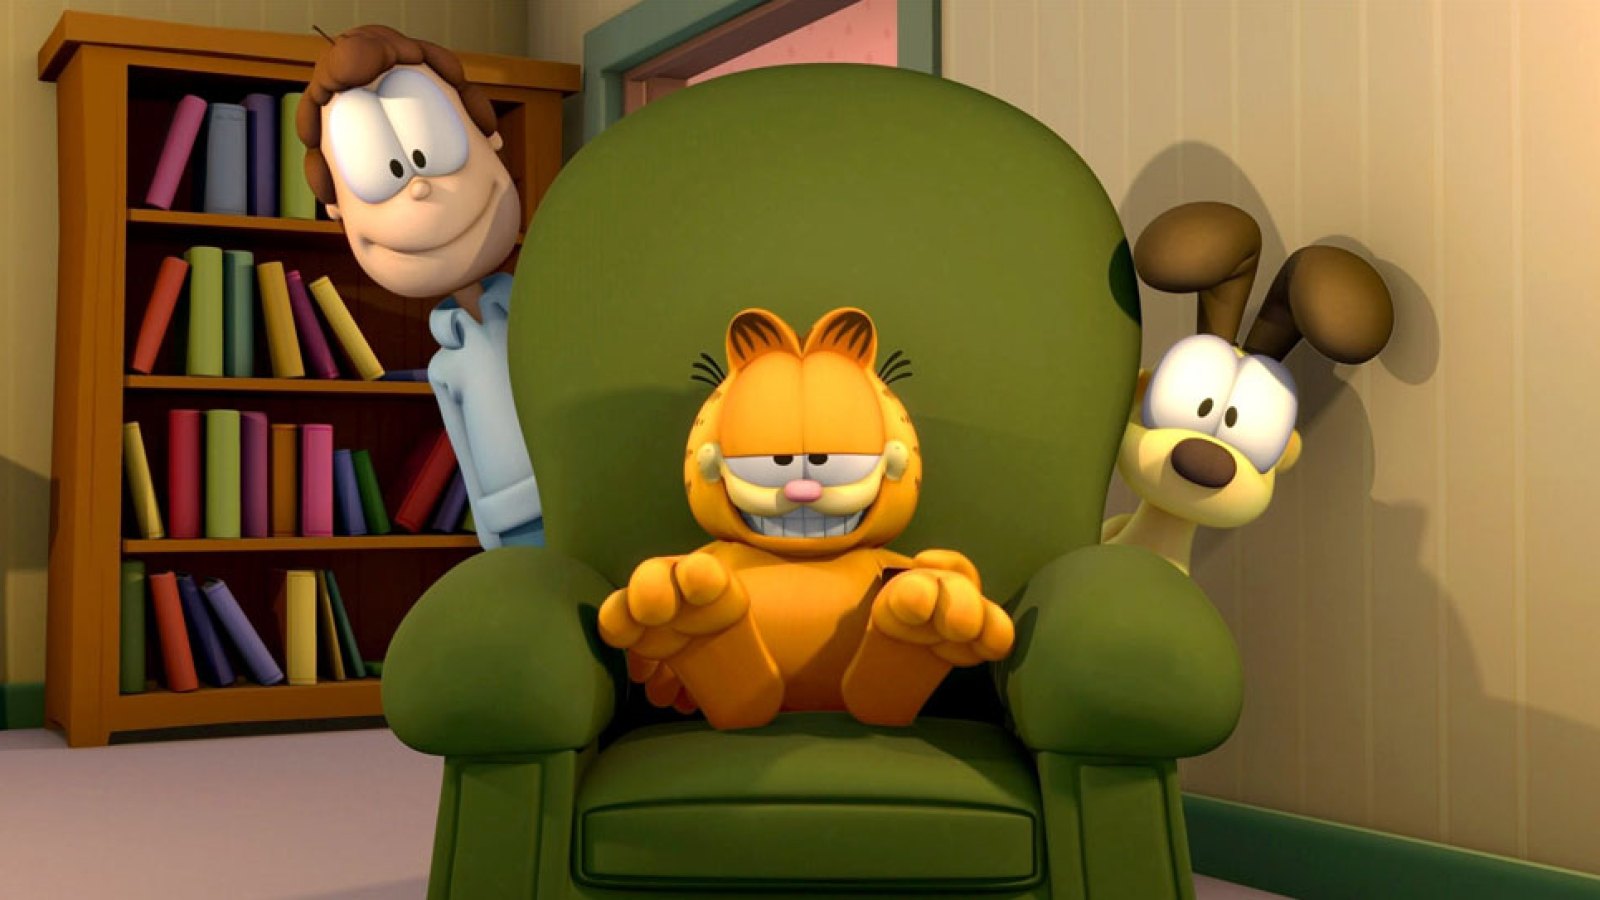 Garfield the cat